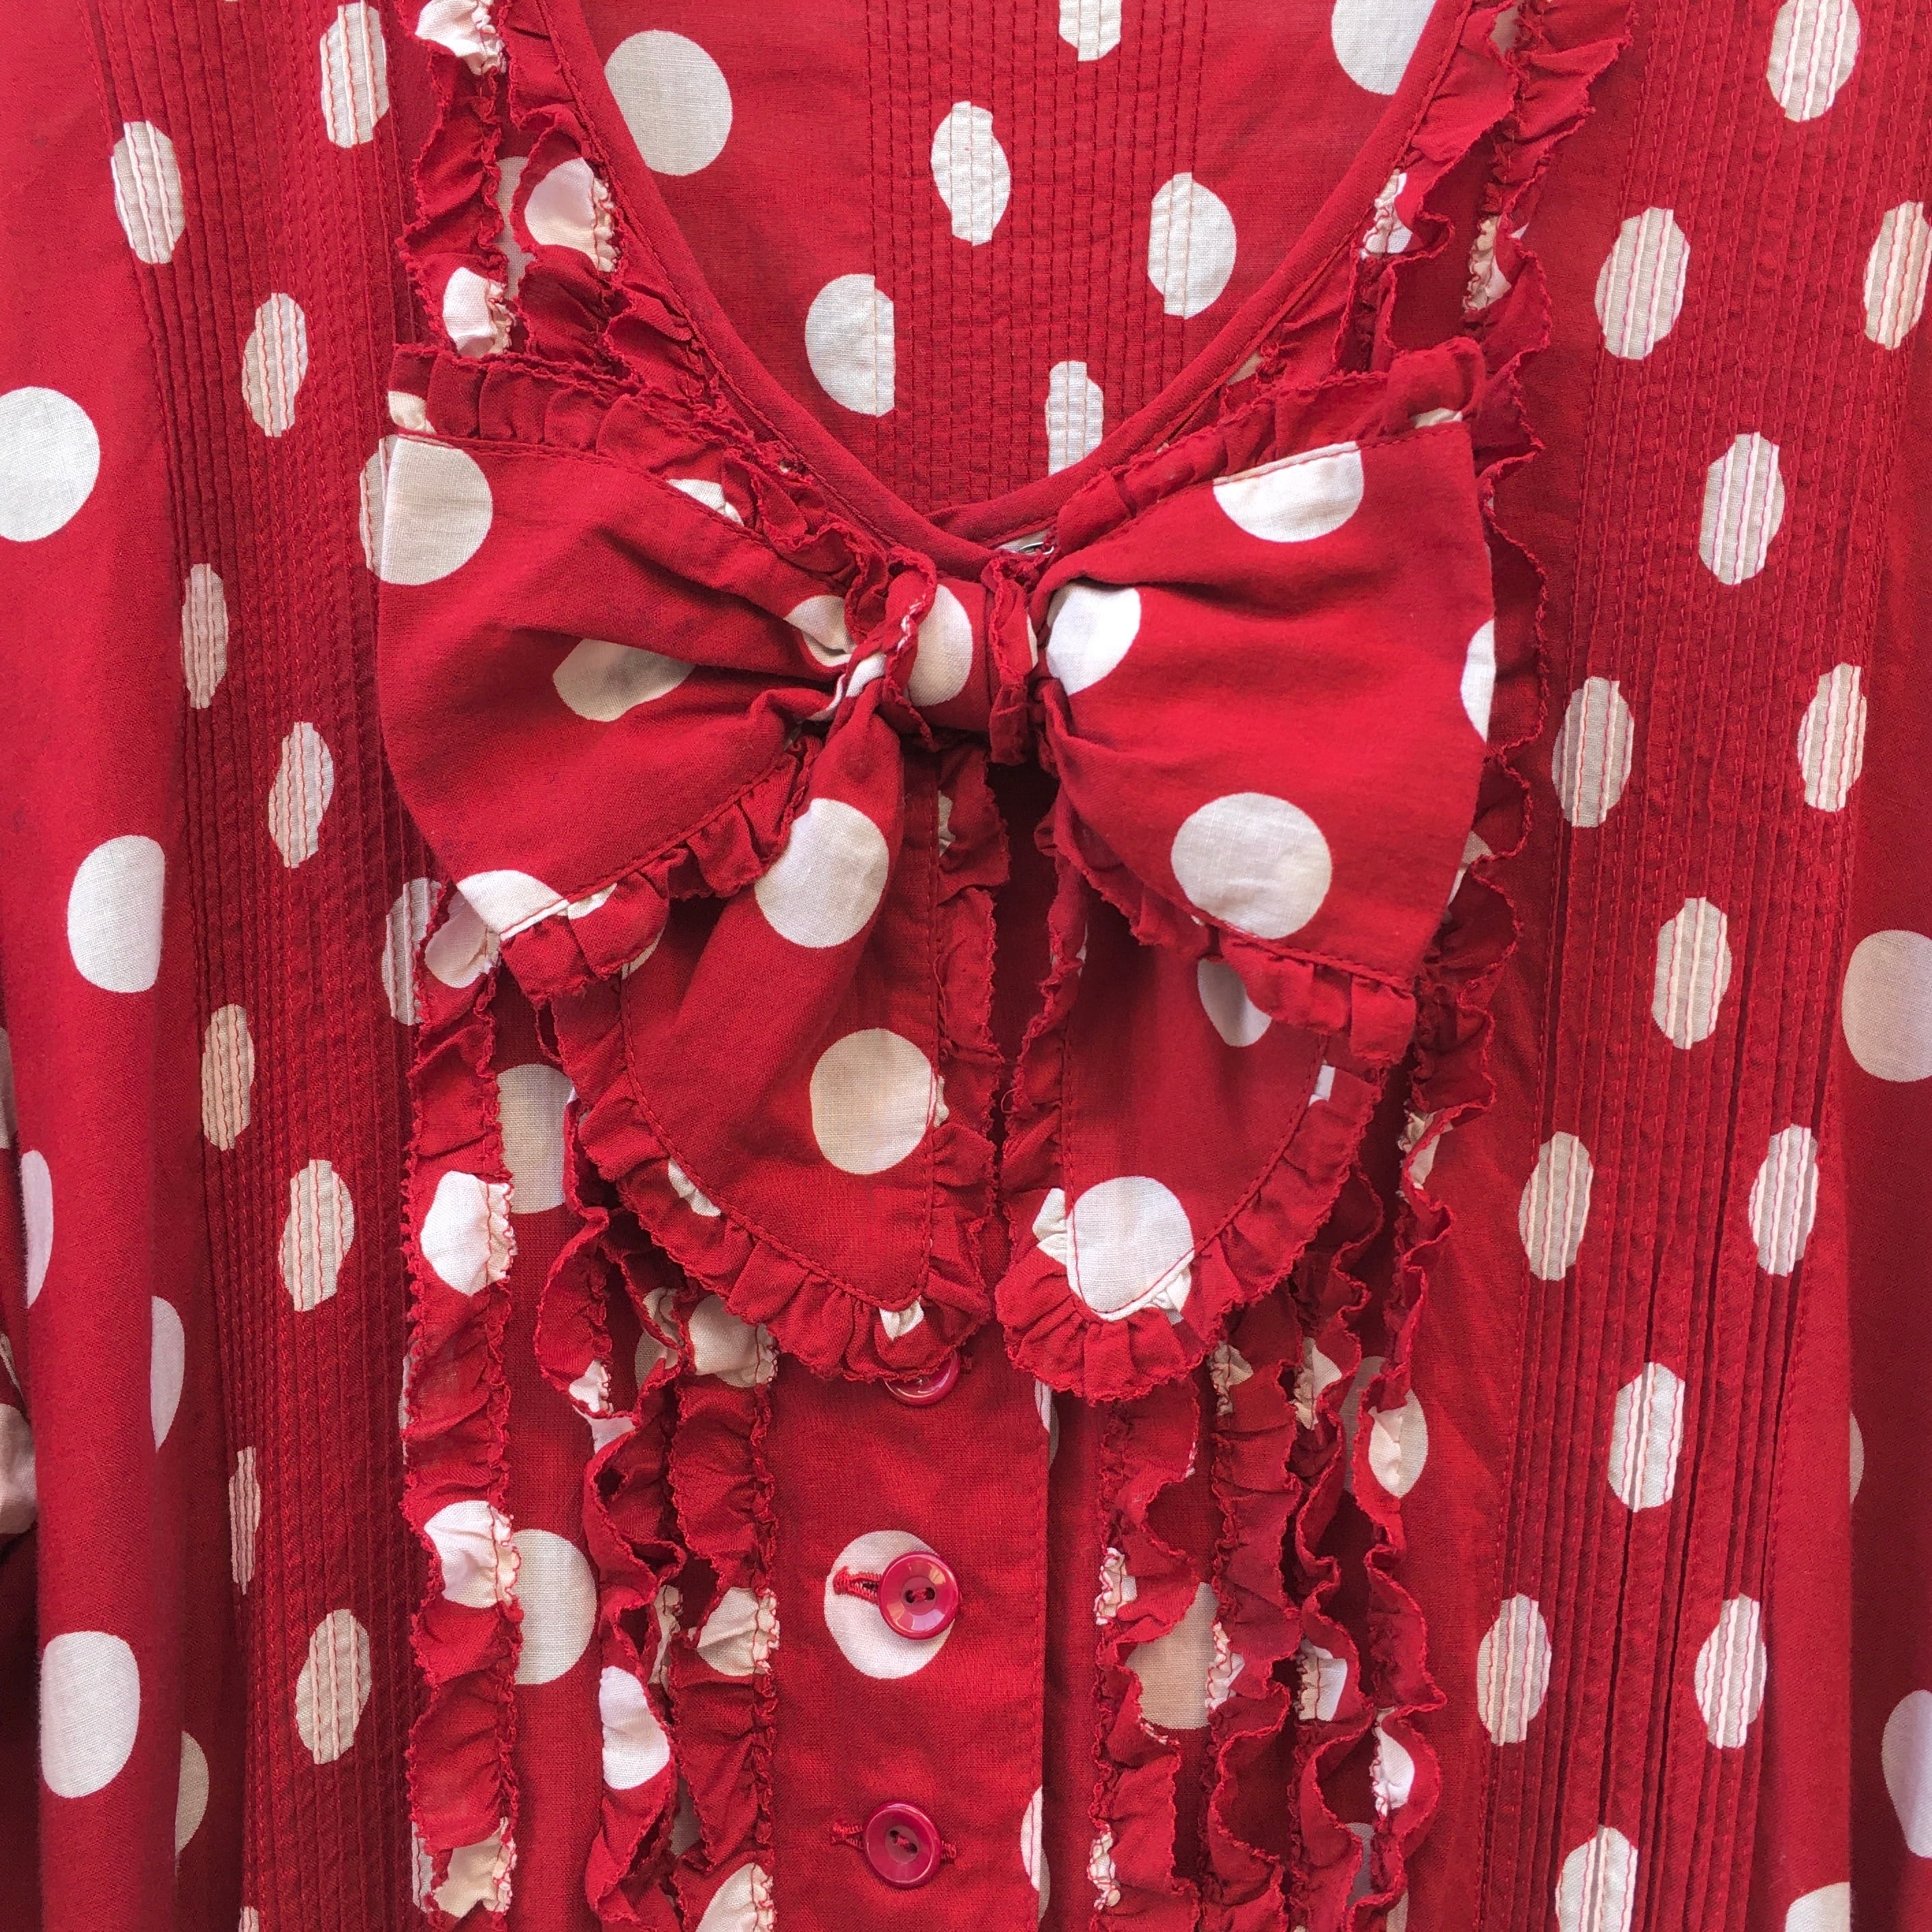 【6/10まで special price】 PINK HOUSE dot ribbon dress〈レトロ古着 ピンクハウス  ドット柄リボンワンピース 赤色 水玉 カネコイサオ 金子功〉